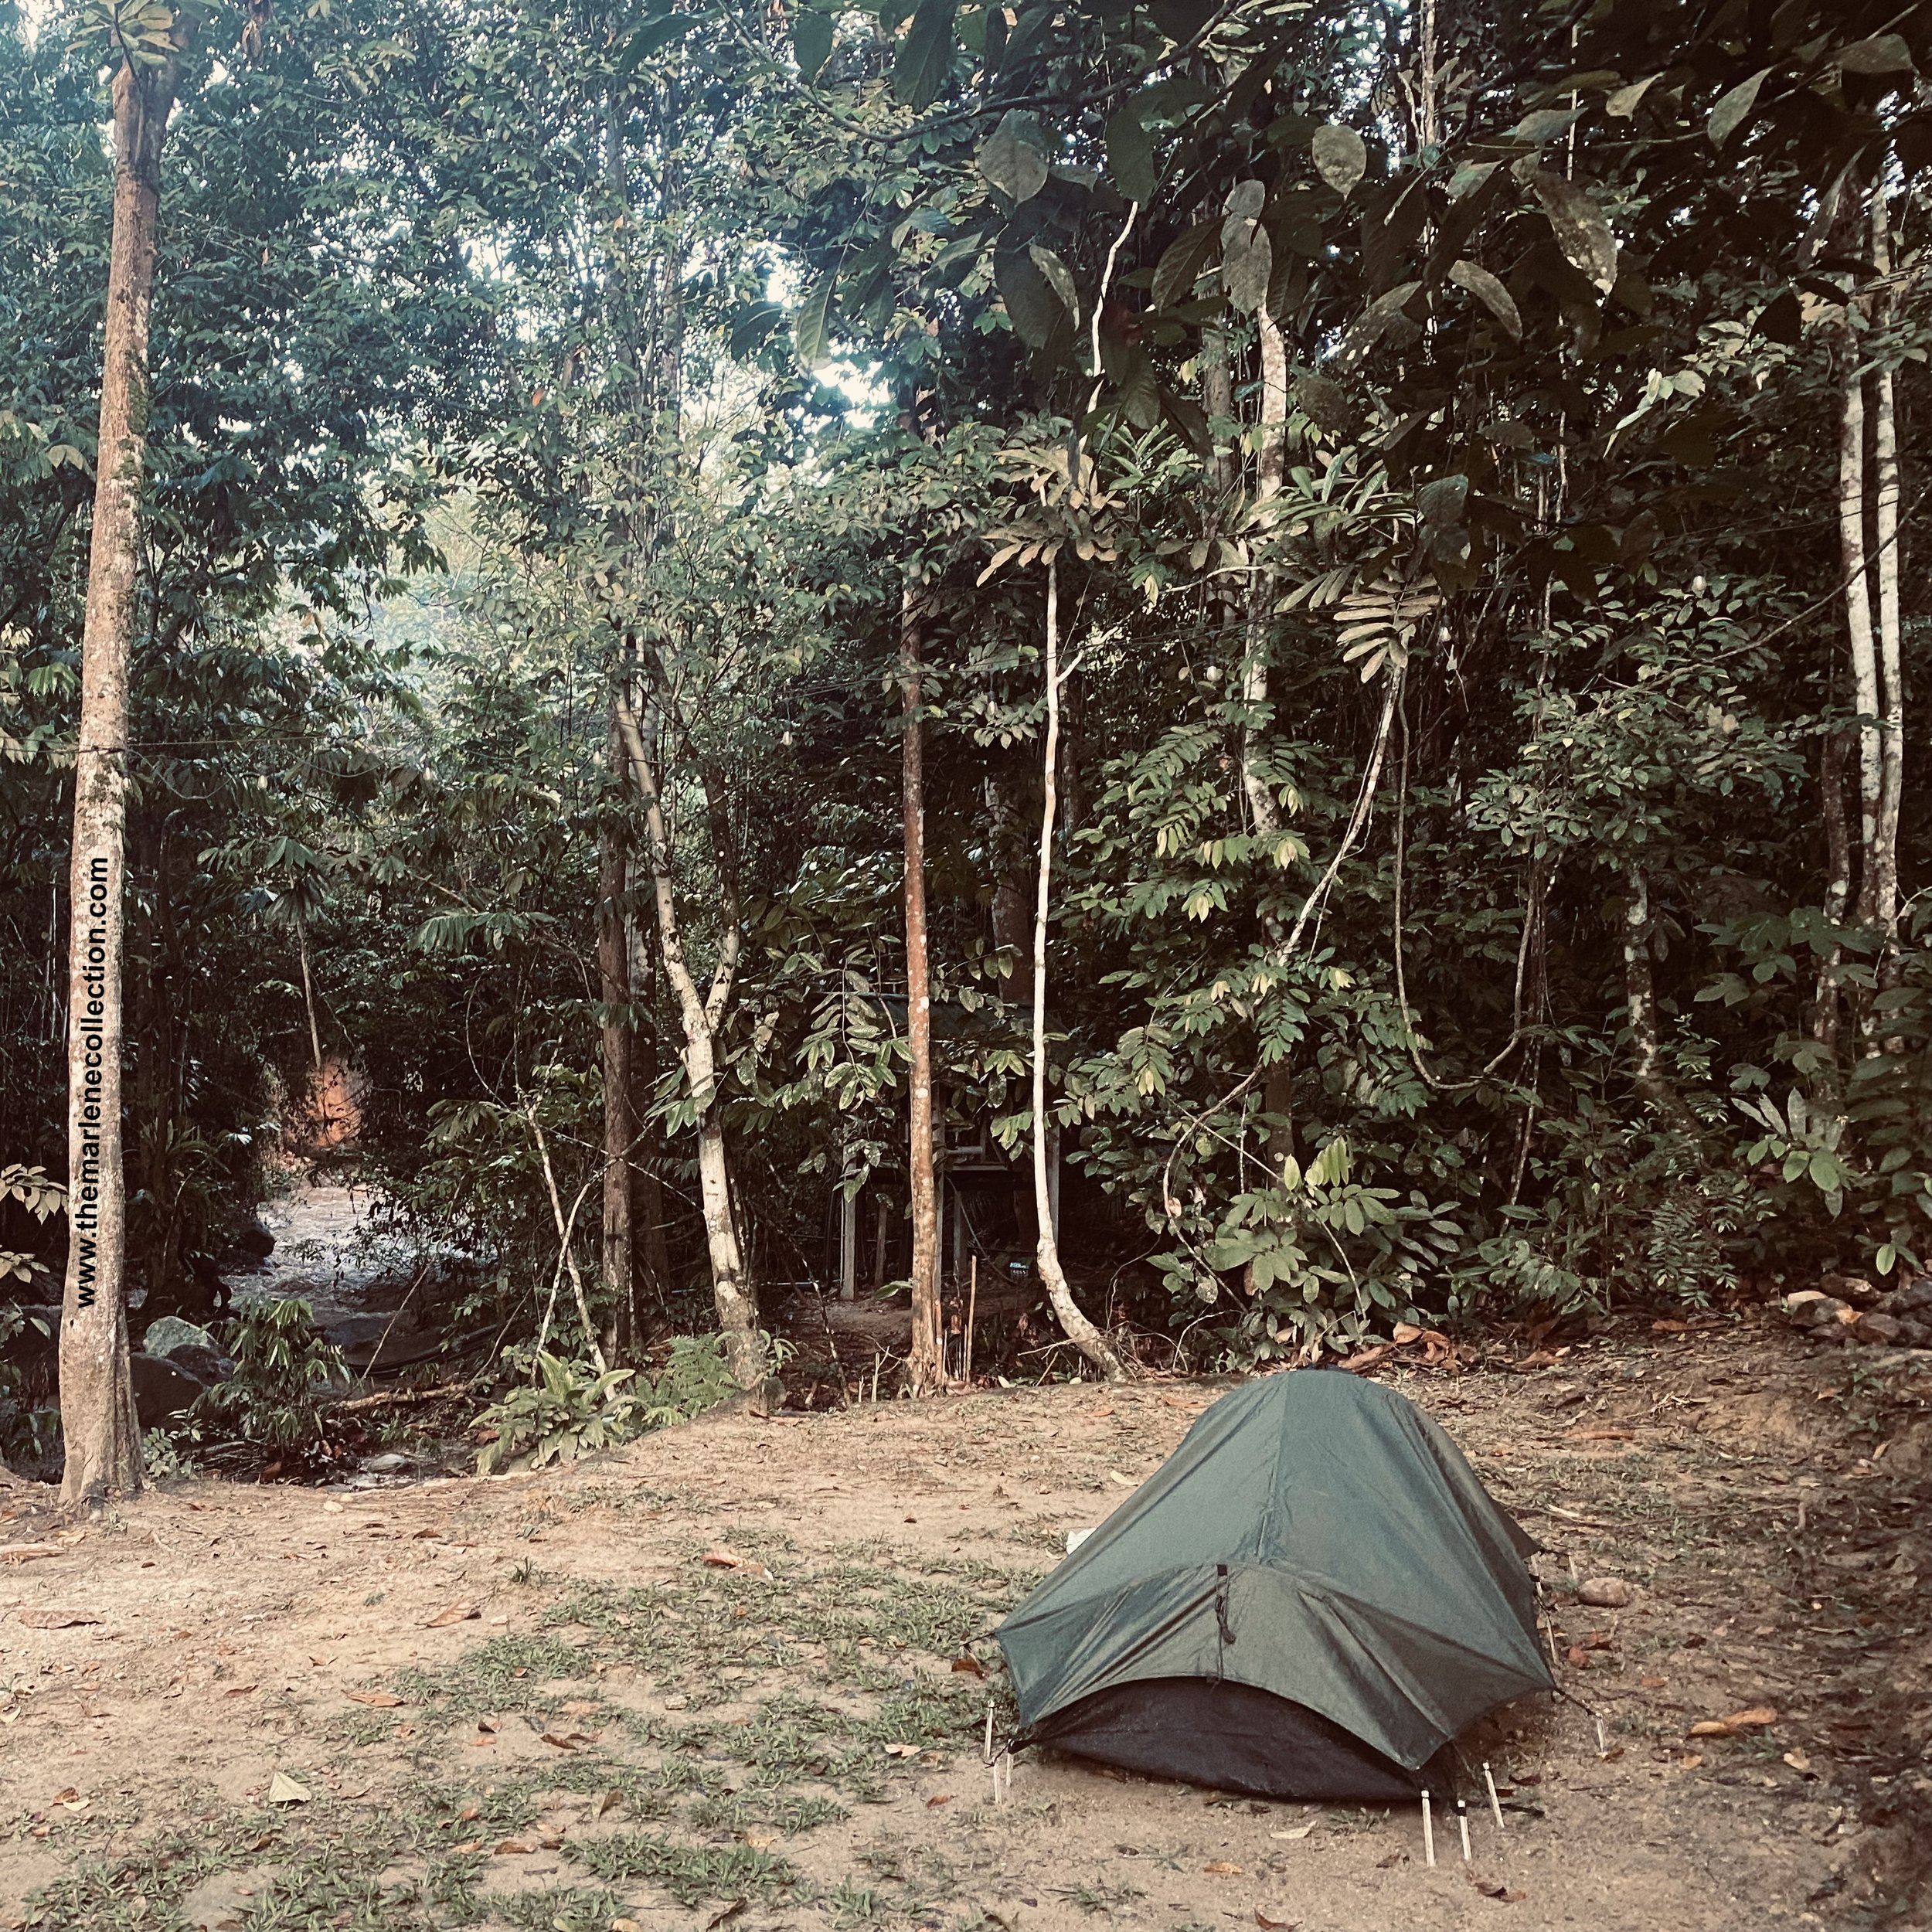 My Tent